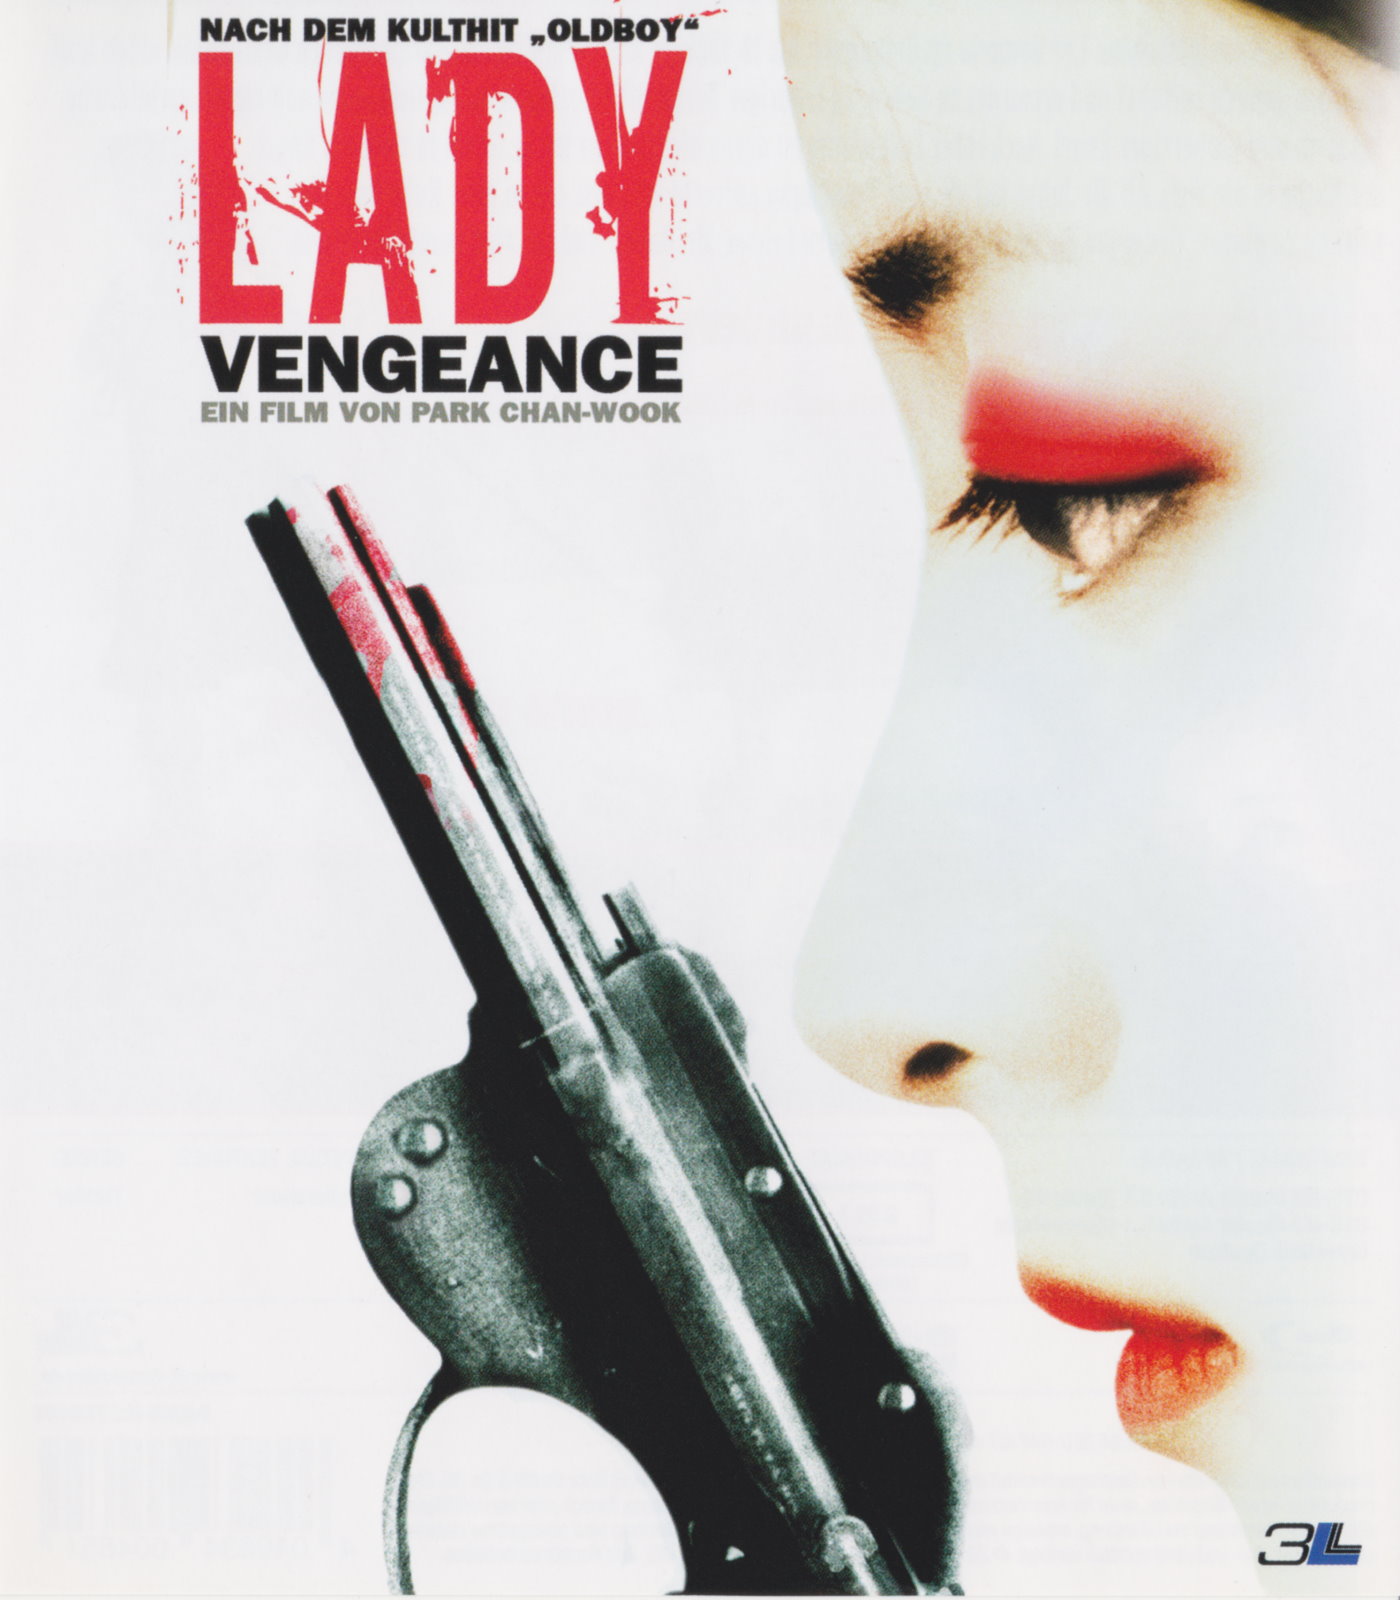 Cover - Lady Vengeance.jpg